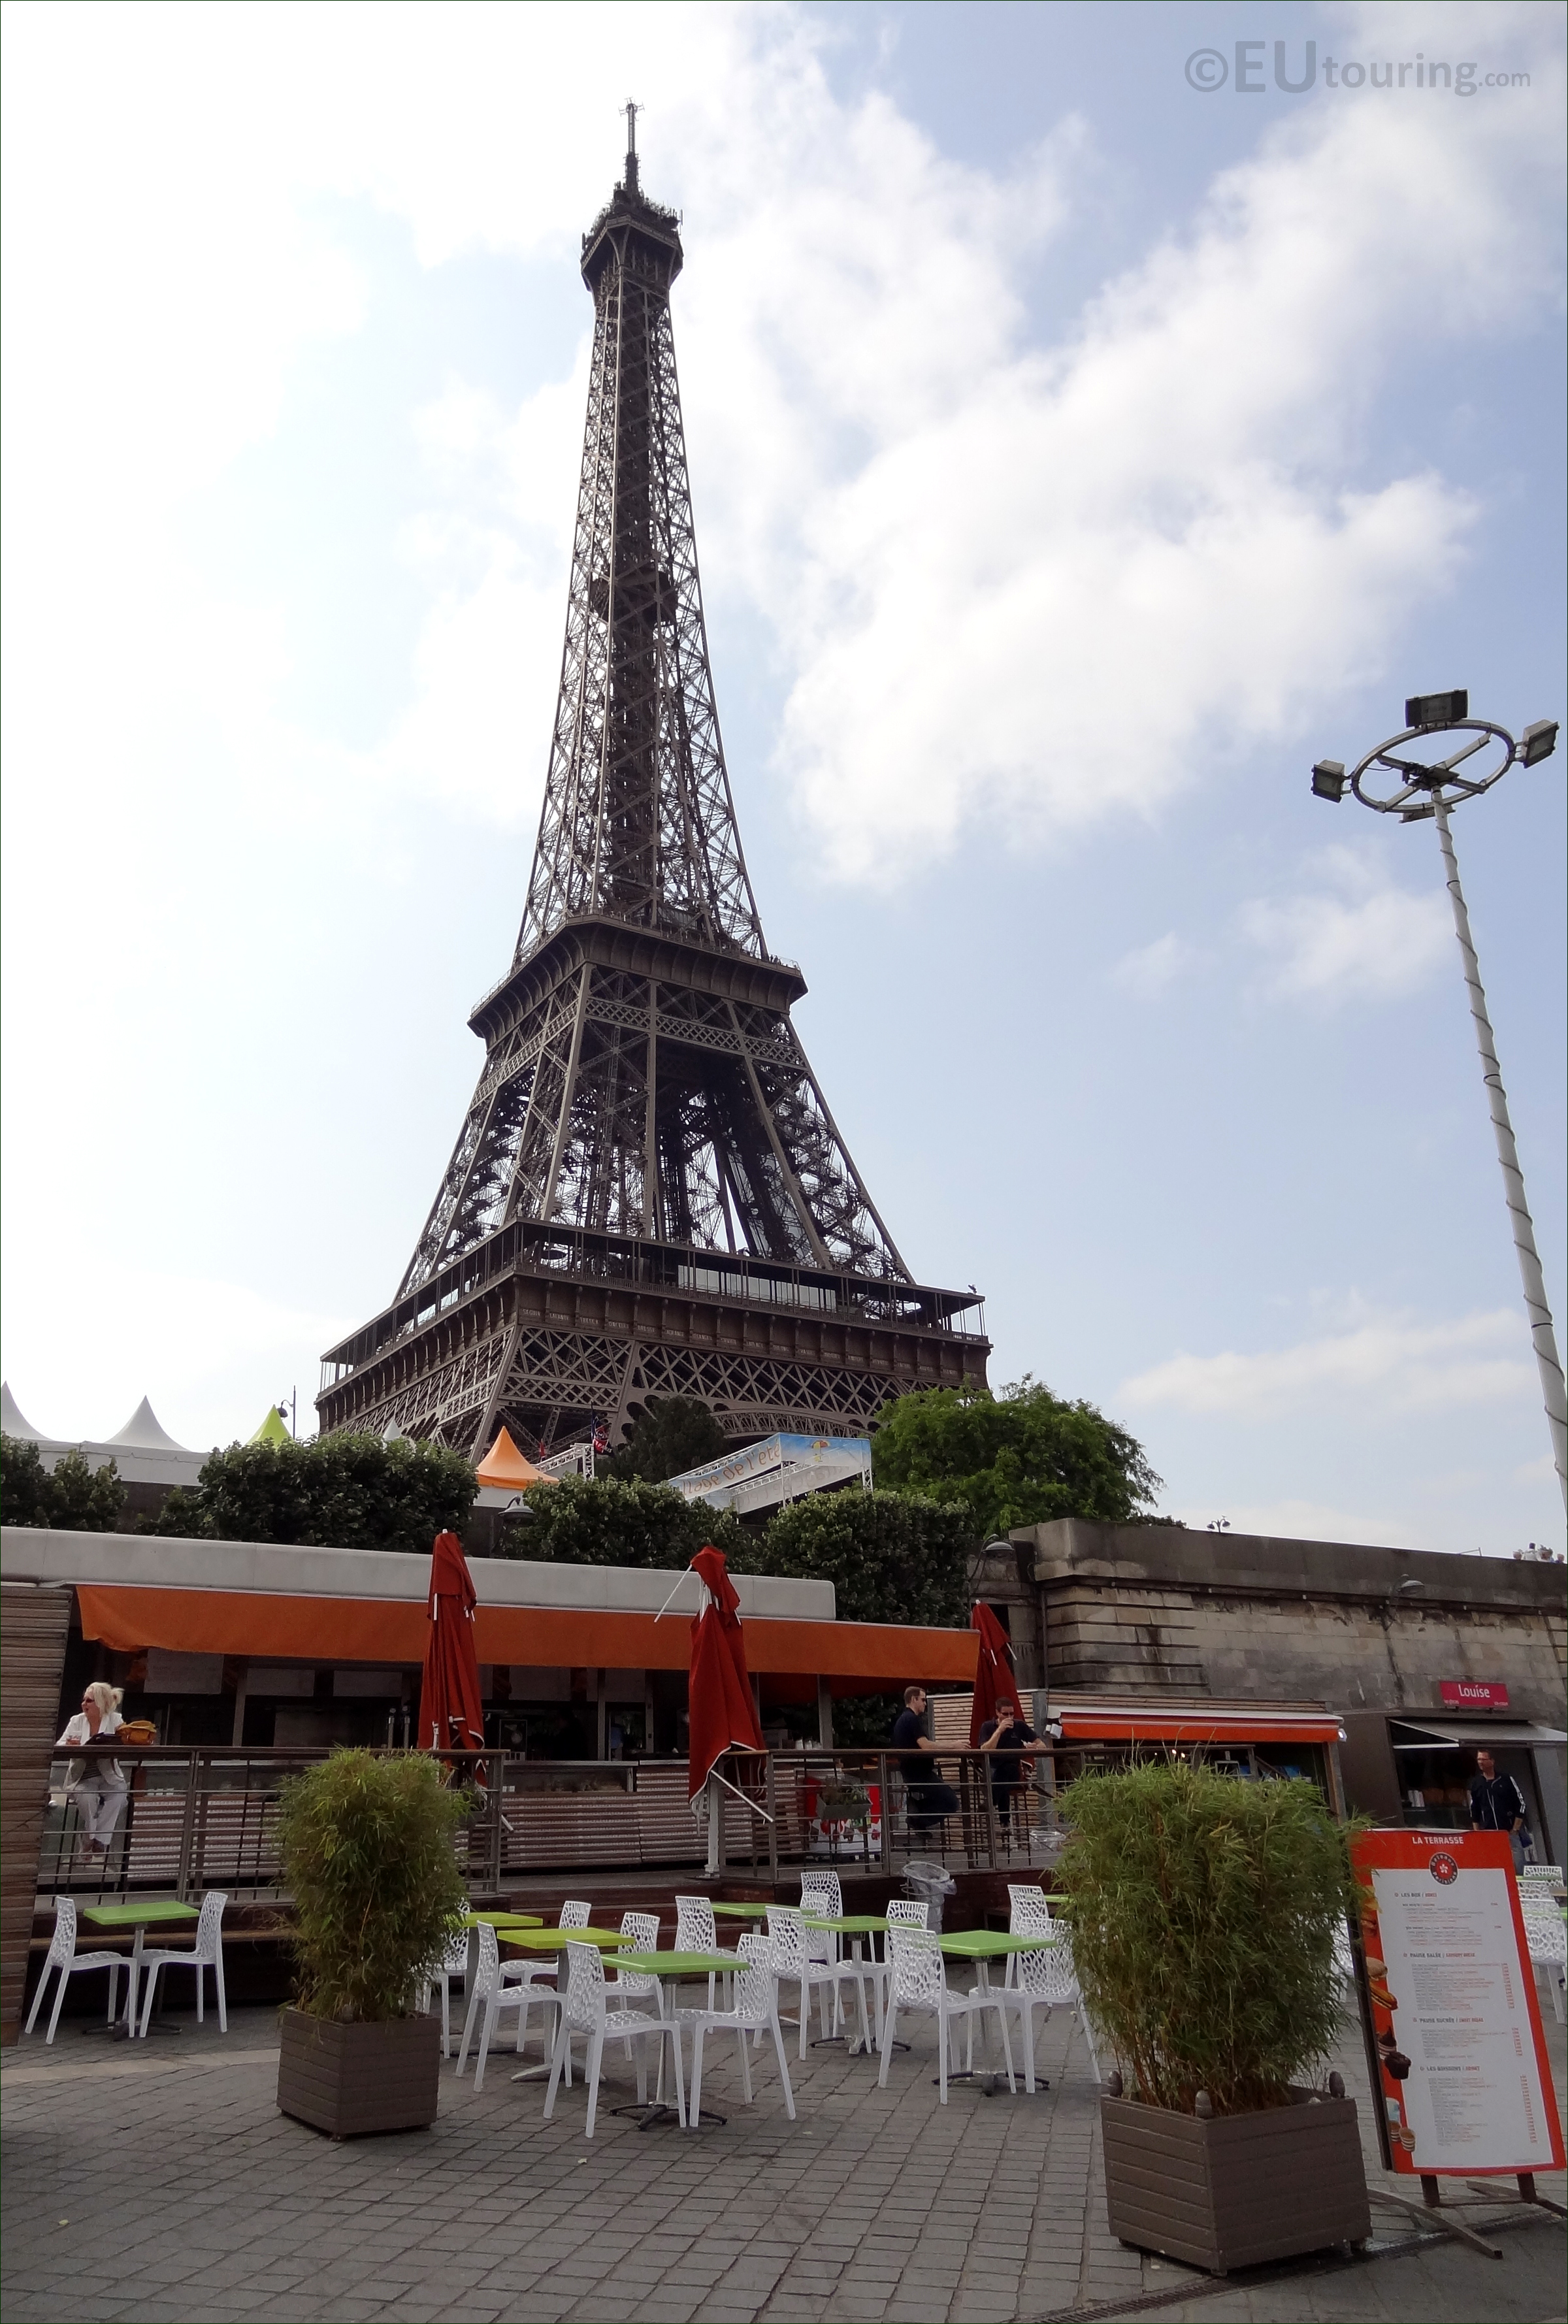 Cafes near the Eiffel